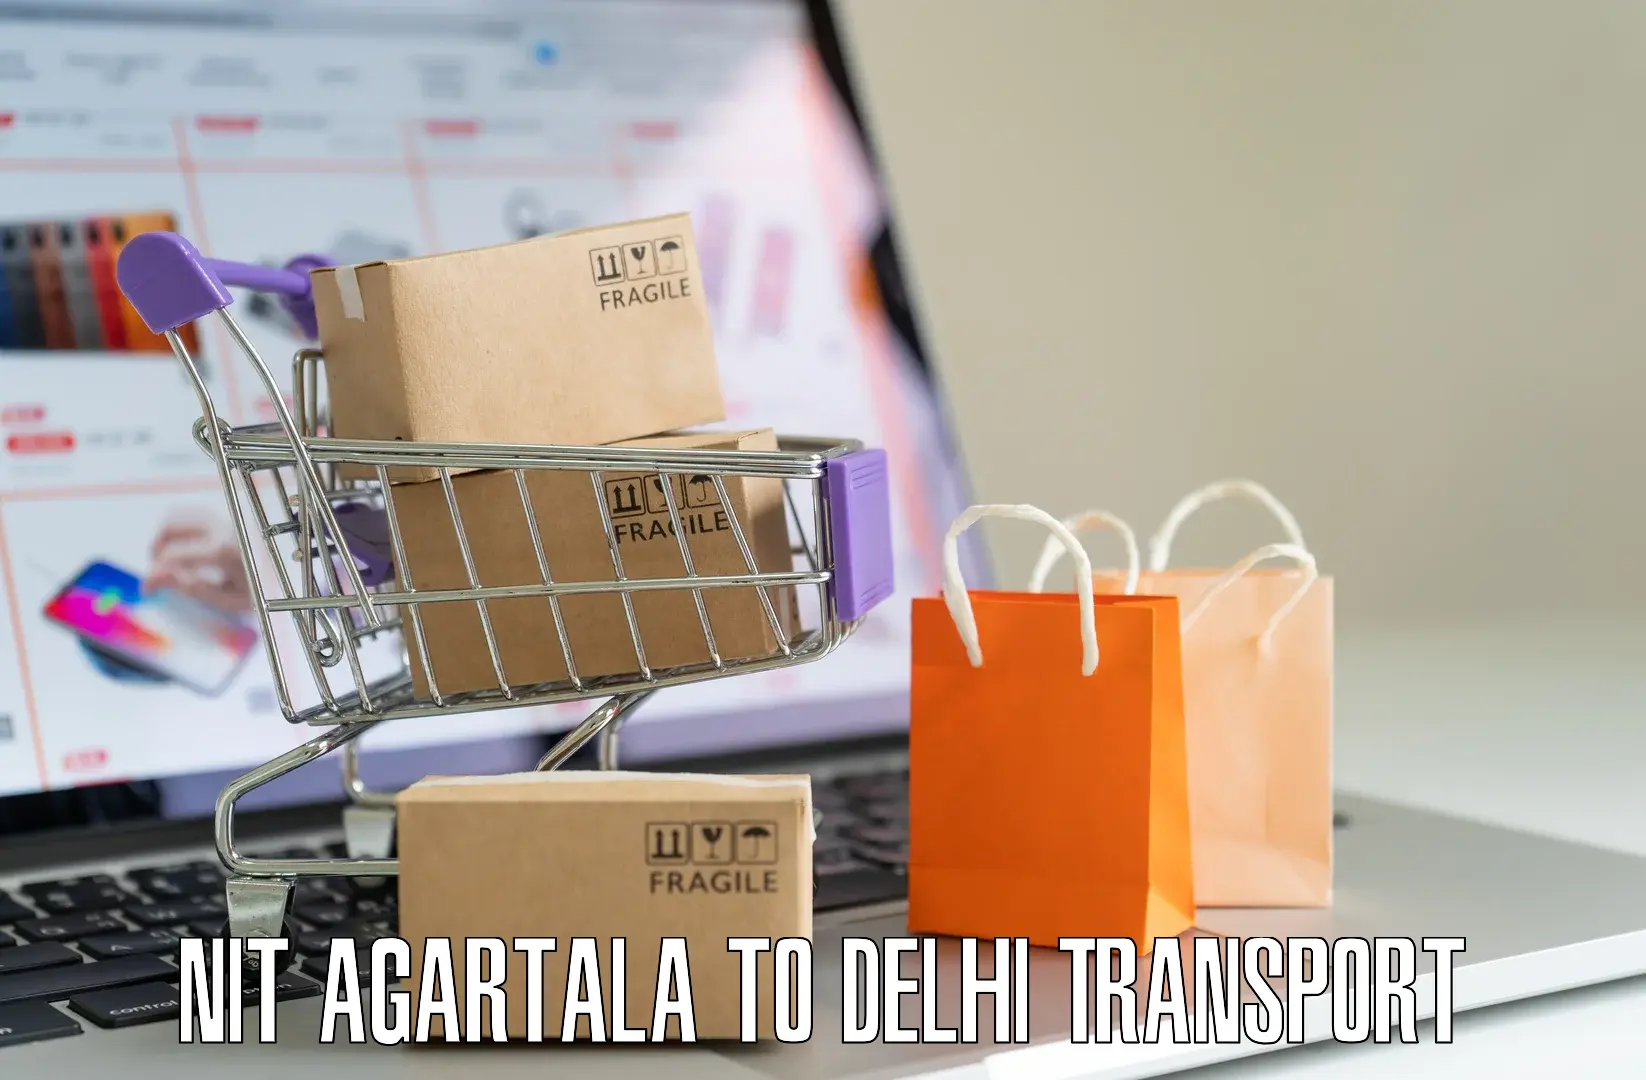 Interstate transport services NIT Agartala to IIT Delhi